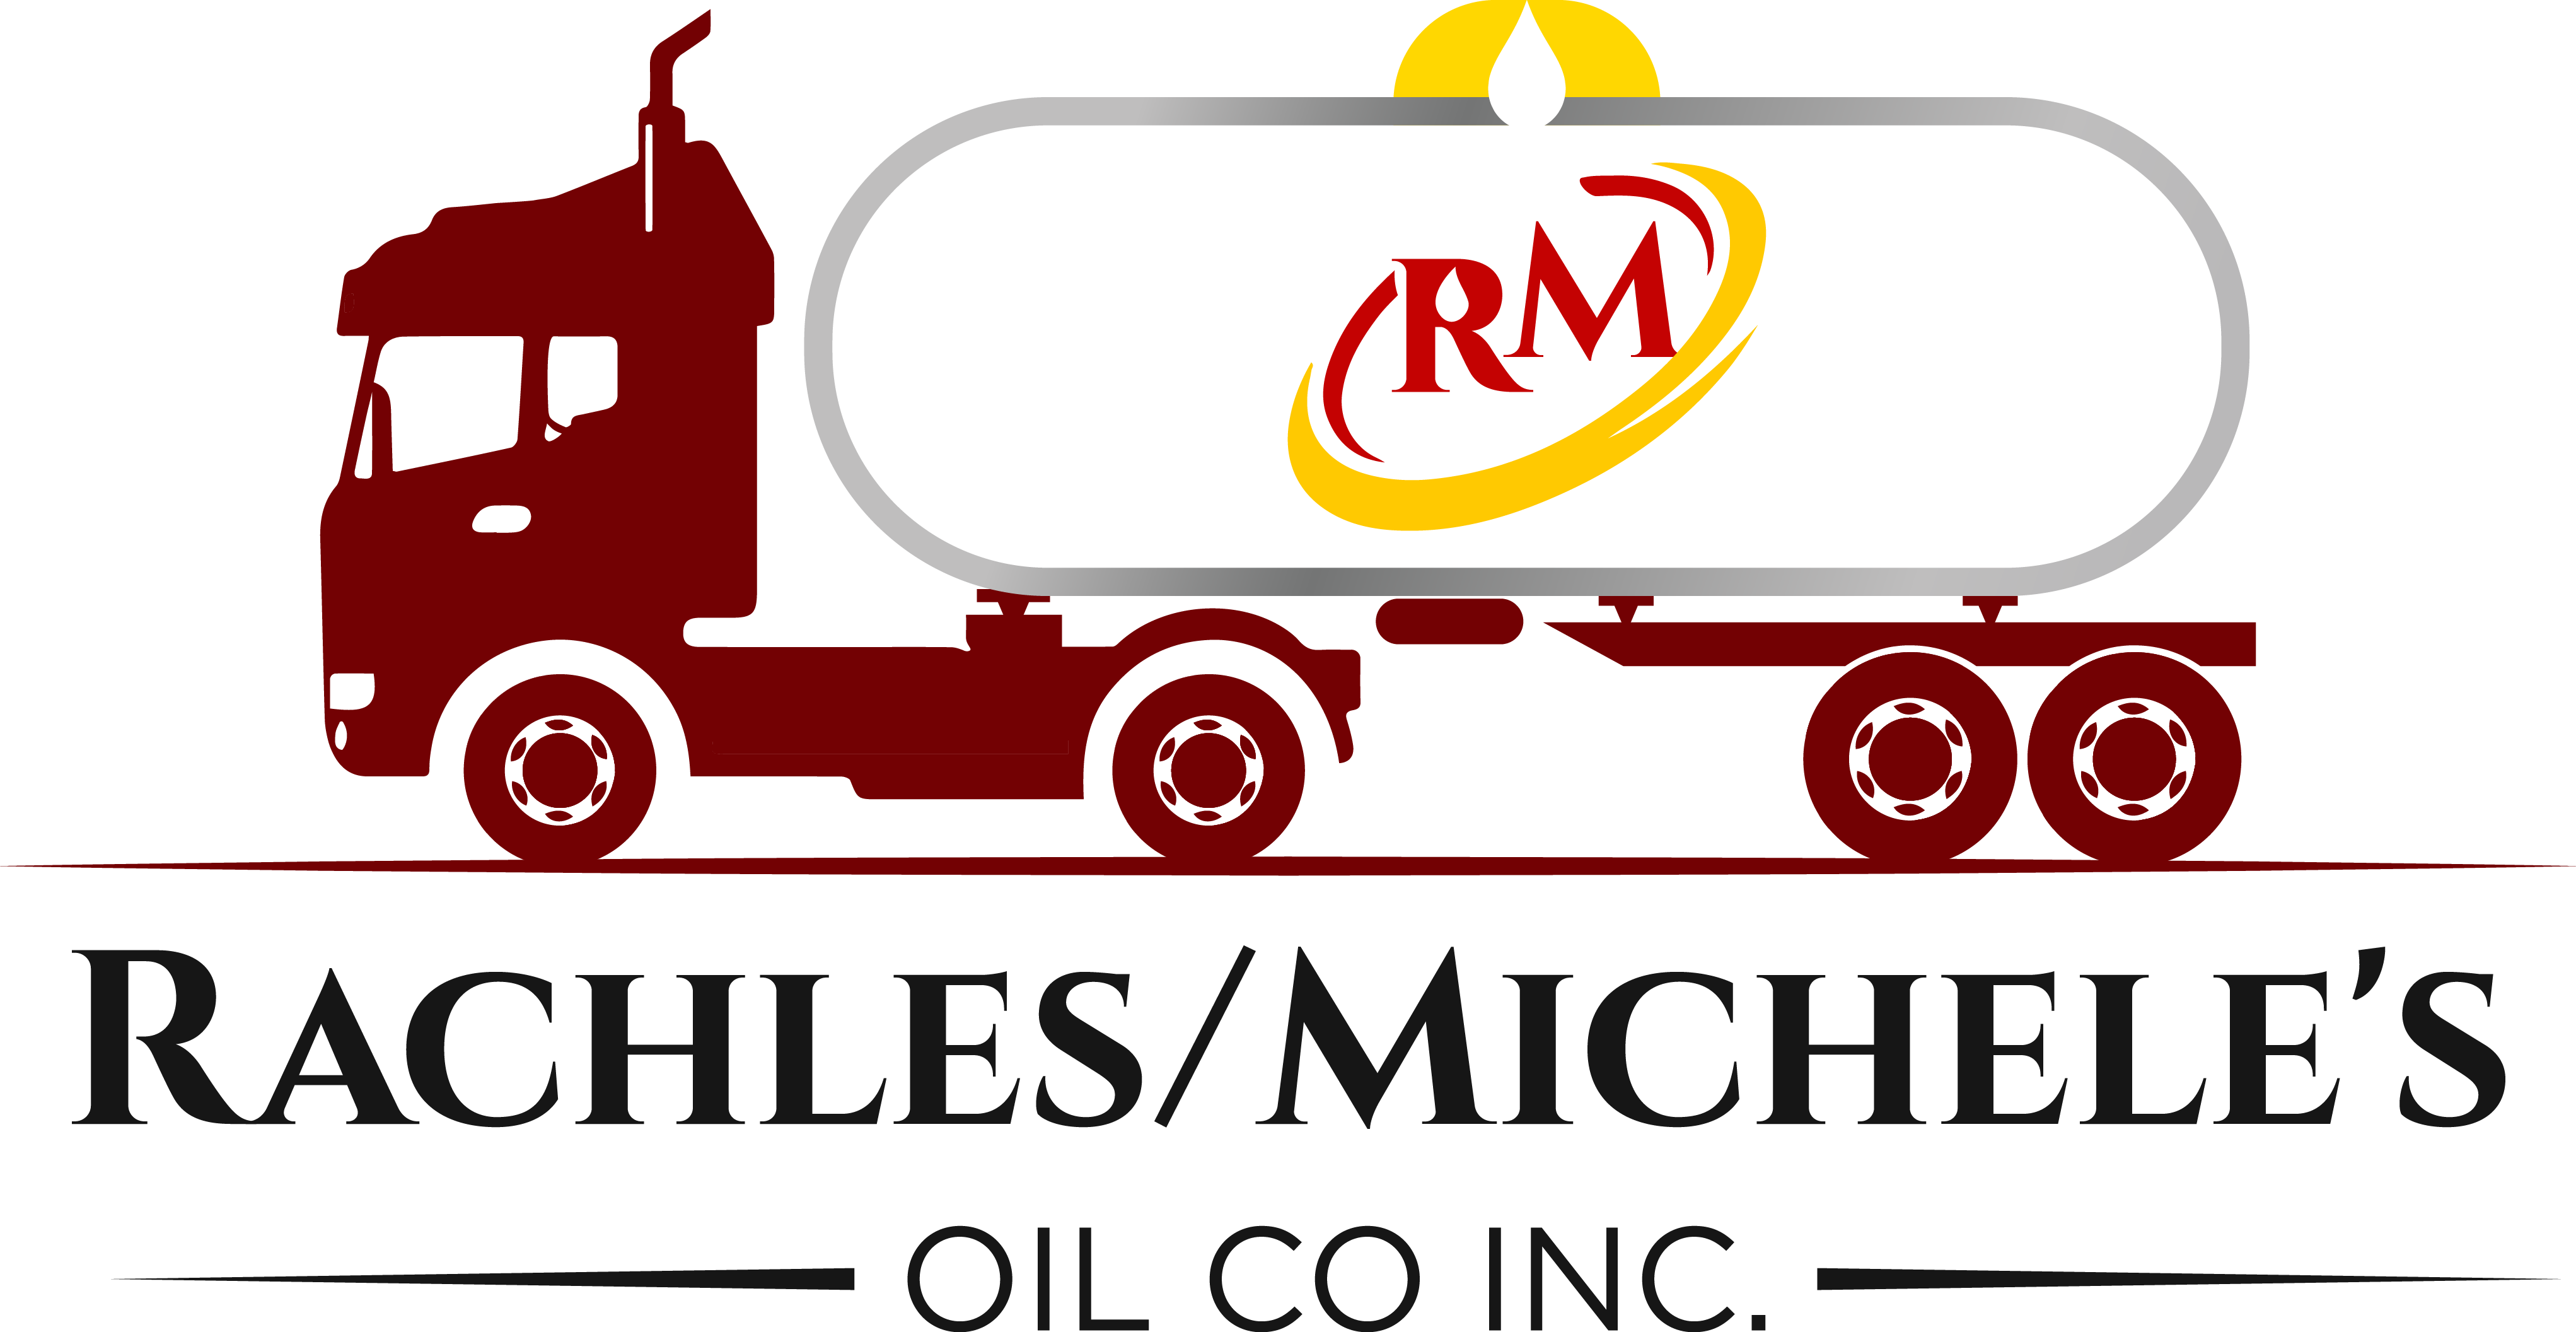 Rachles/Michele's Oil Co